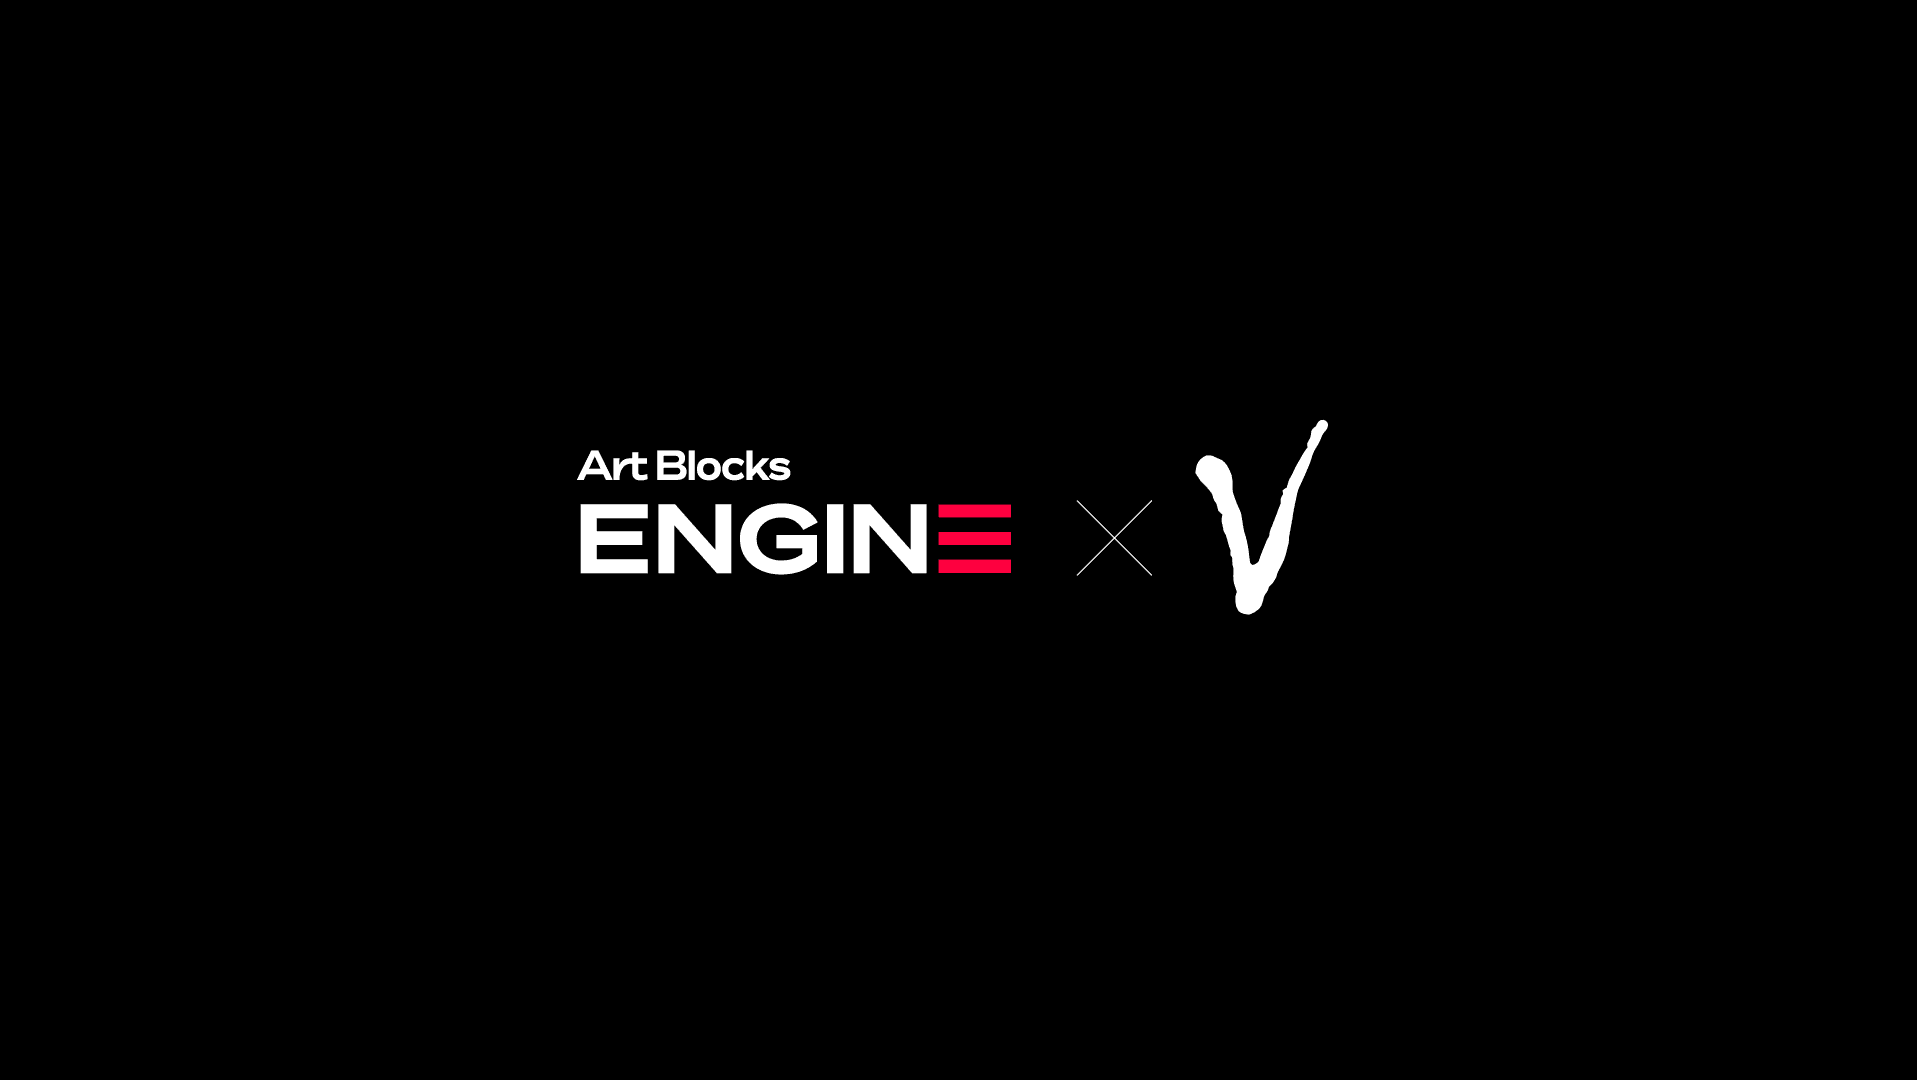 VCA_AB_Engine bannière